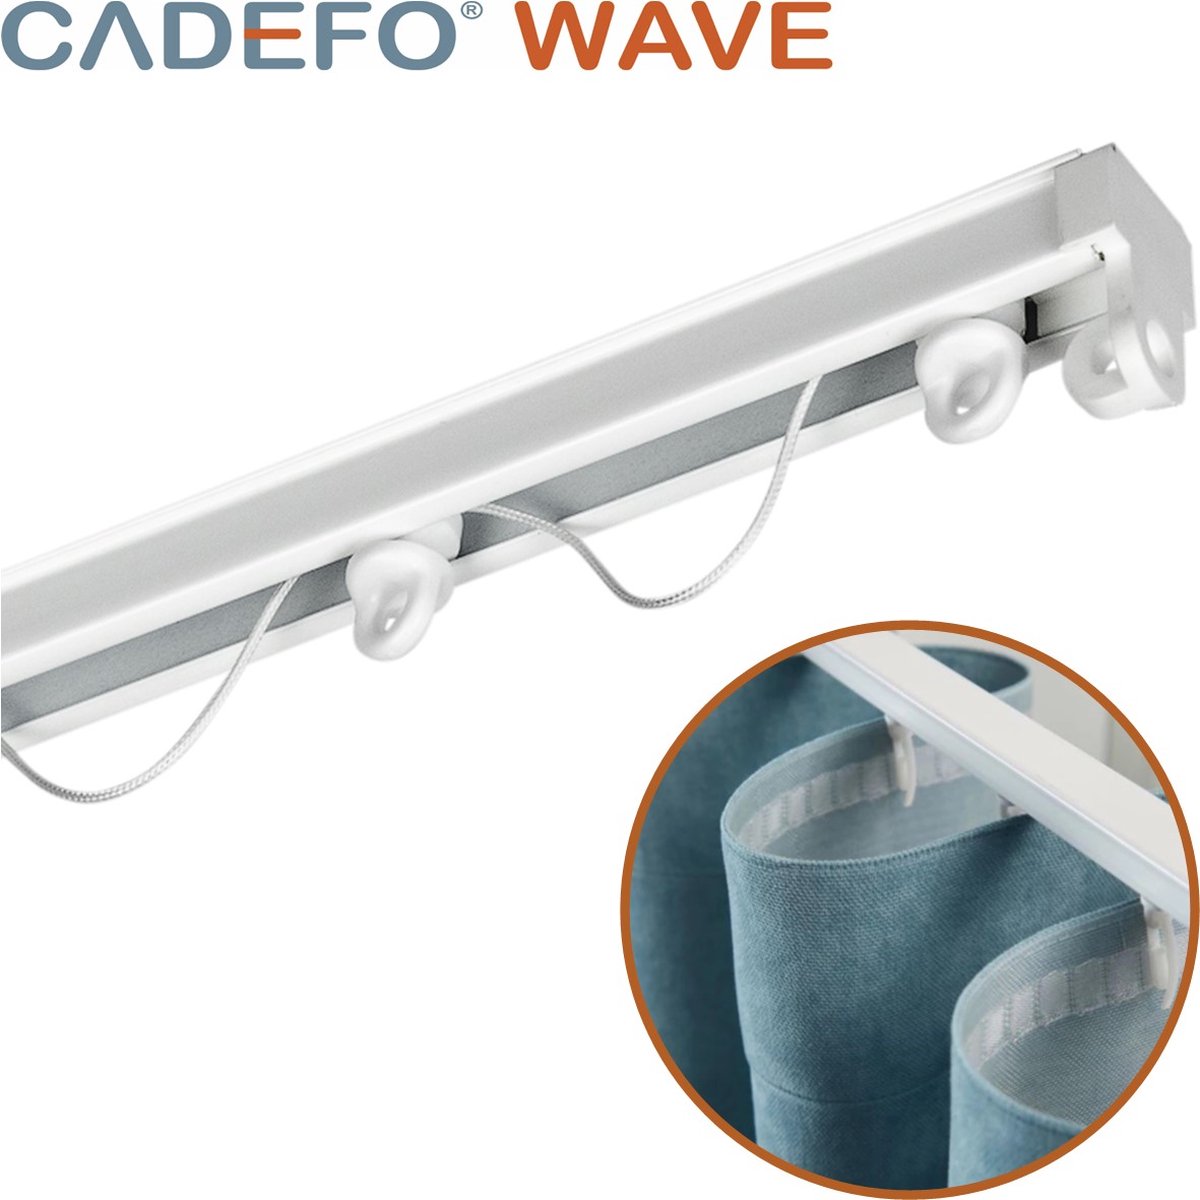 CADEFO WAVE (551 - 600 cm) Gordijnrails - Compleet op maat! - UIT 1 STUK - Leverbaar tot 6 meter - Plafondbevestiging - Lengte 582 cm